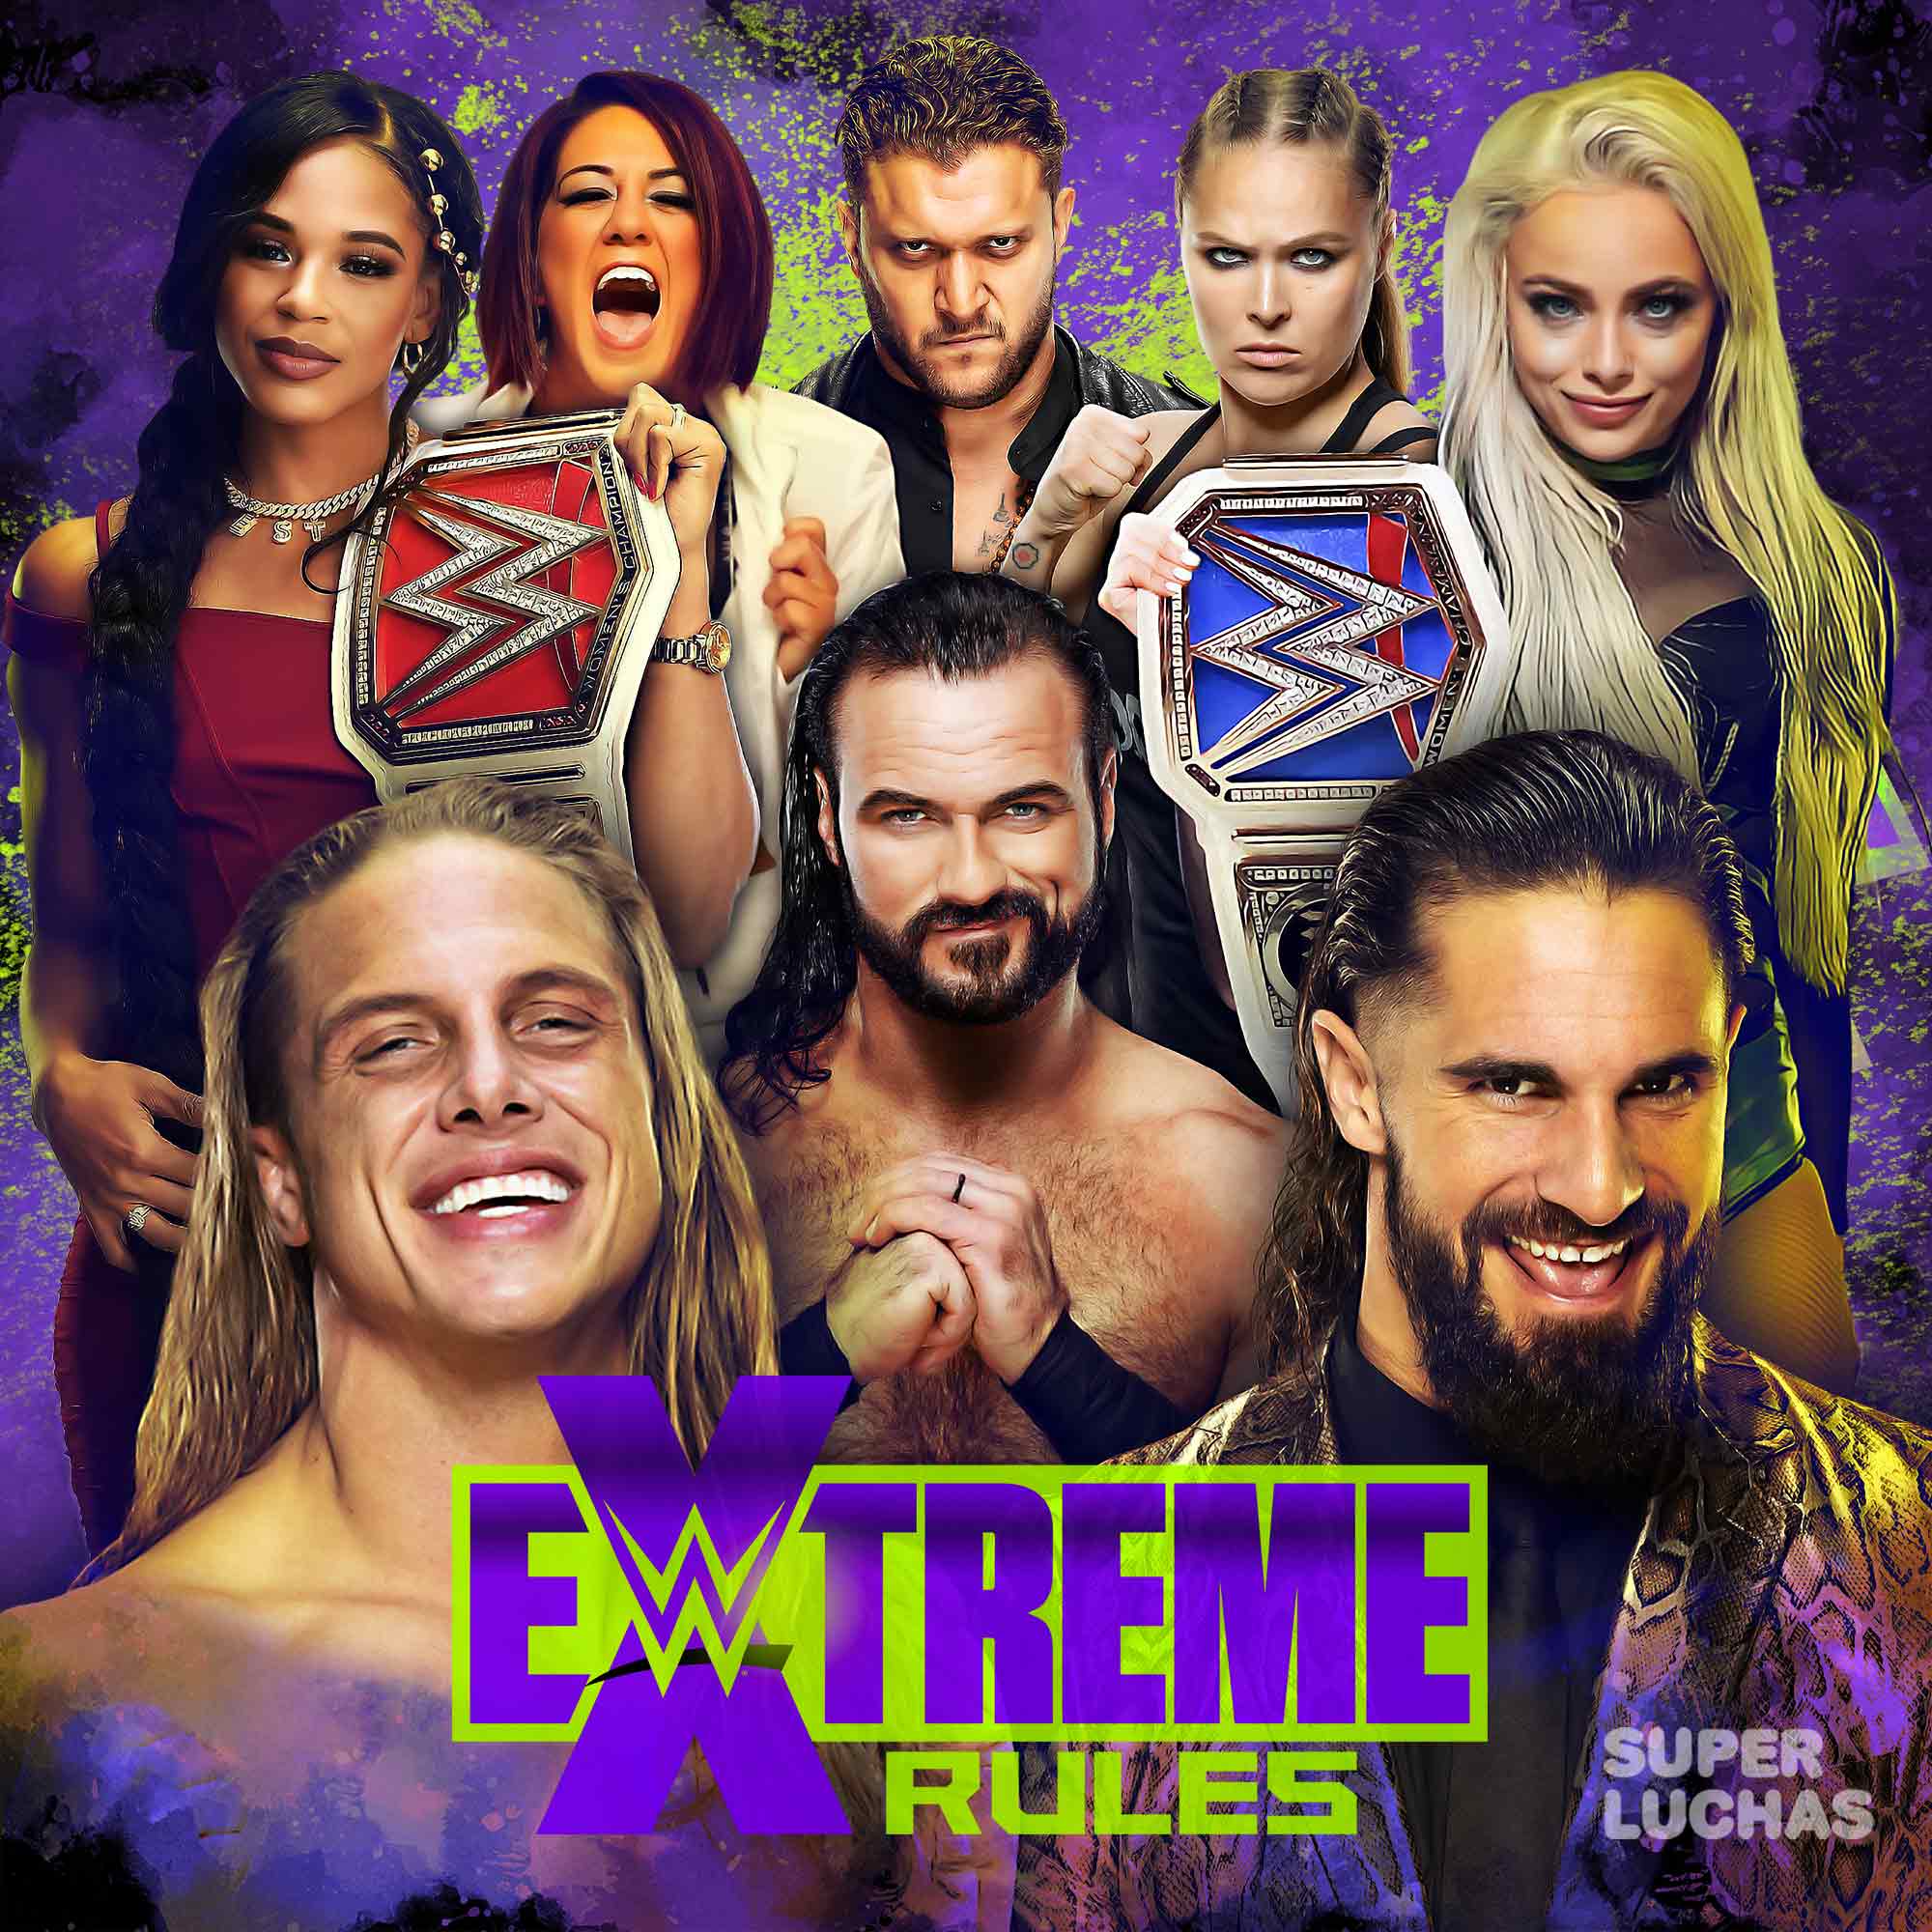 مشاهدة عرض اكستريم رولز WWE Extreme Rules 2022 بالتعليق العربي